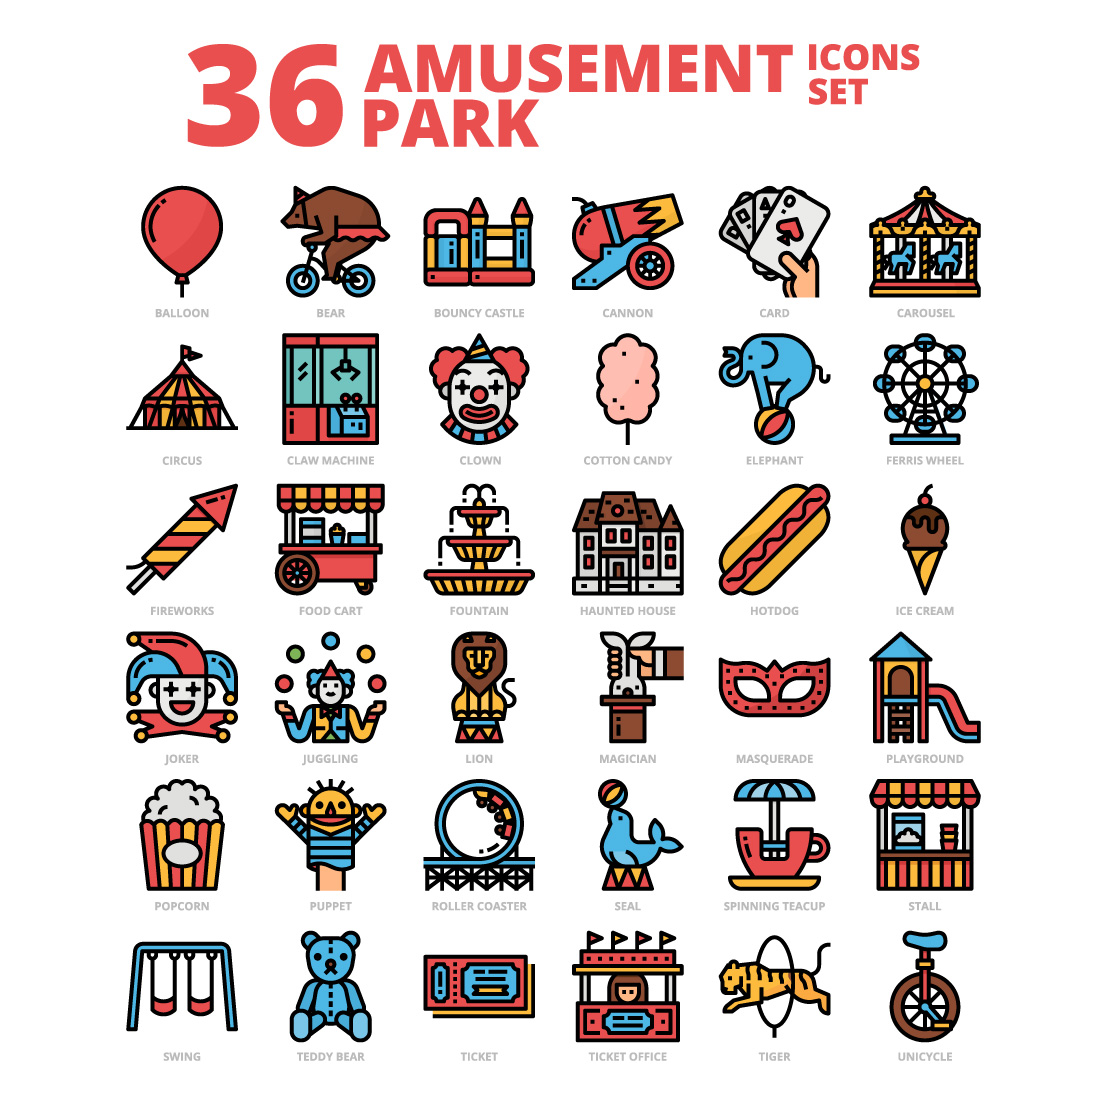 36 Amusement Park Icons Set x 4 Styles cover image.